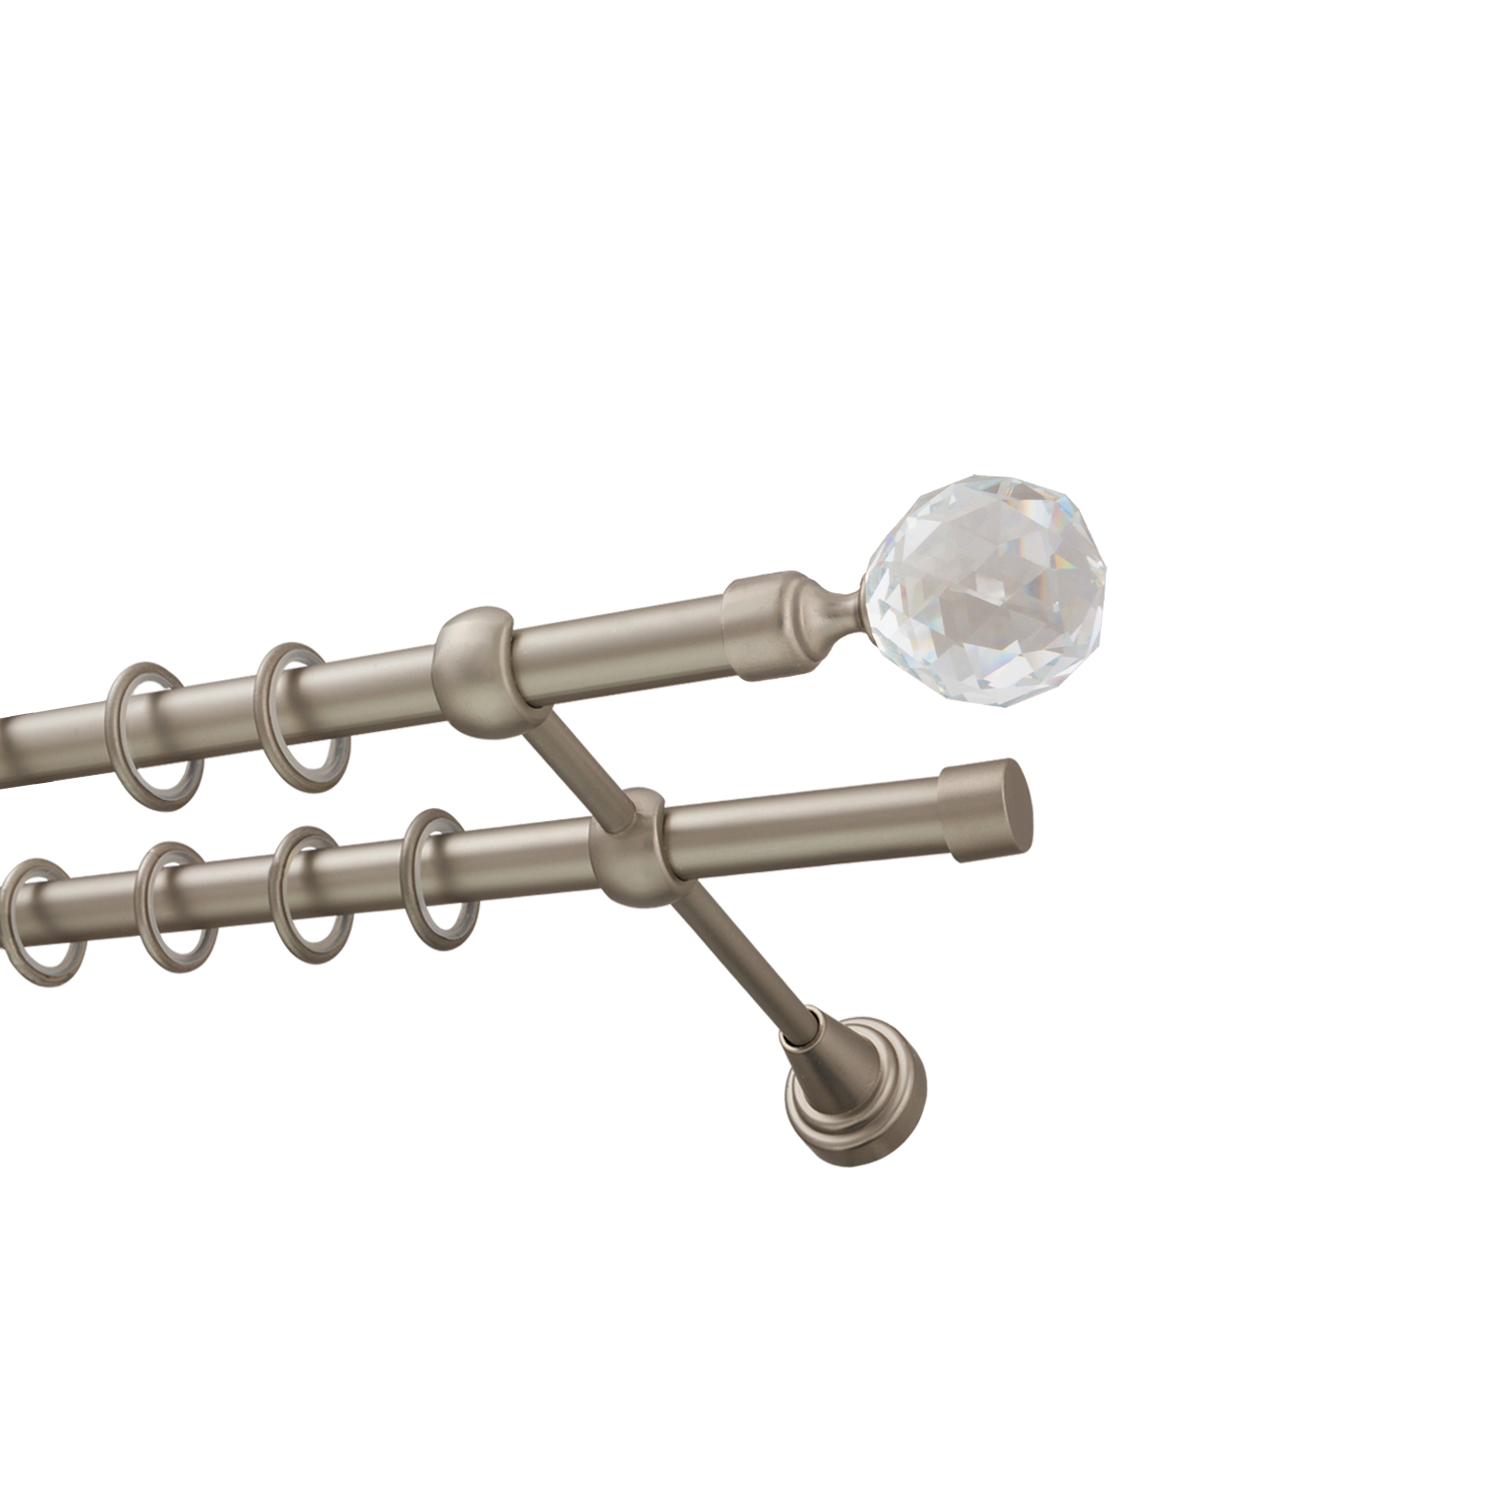 Металлический карниз для штор Карат, двухрядный 16/16 мм, сталь, гладкая штанга, длина 180 см - фото Wikidecor.ru